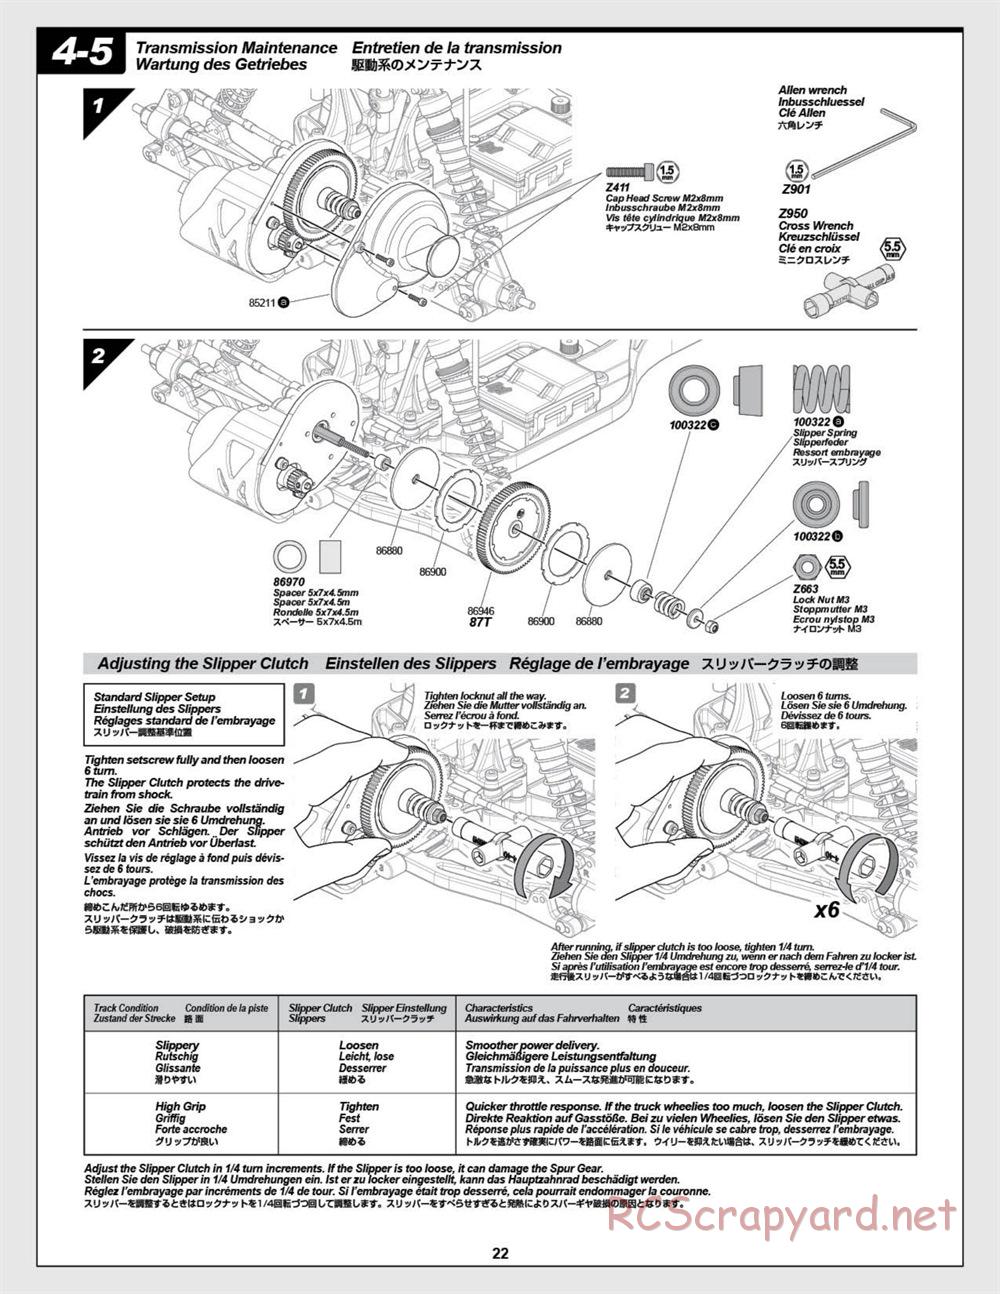 HPI - E-Firestorm-10T - Manual - Page 22